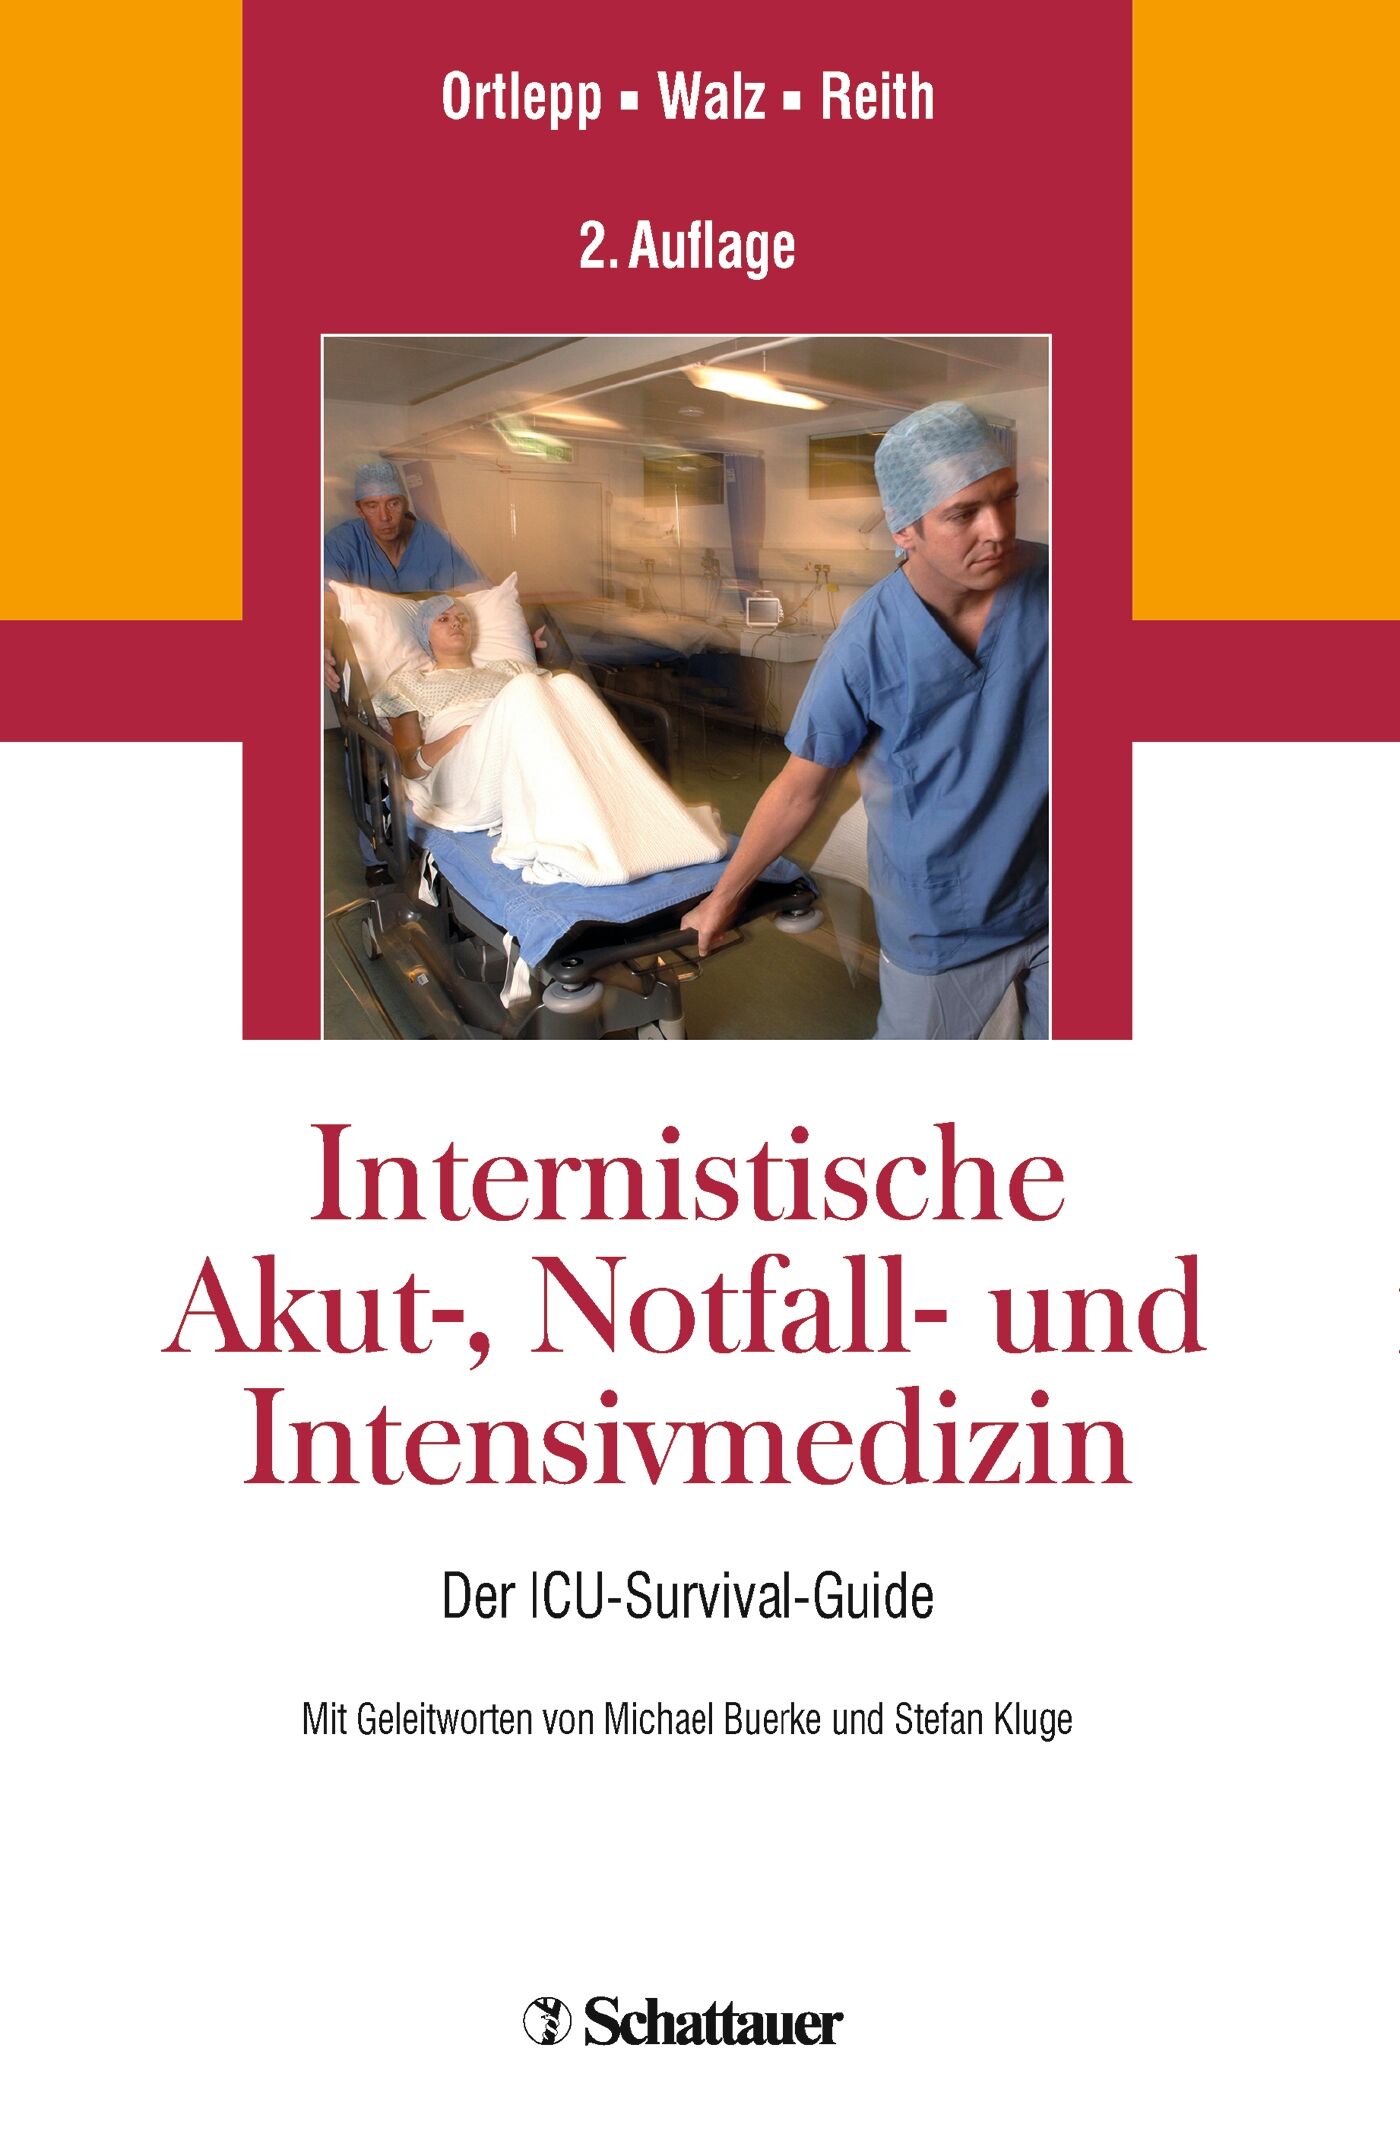 Internistische Akut-, Notfall- und Intensivmedizin, 9783794529858